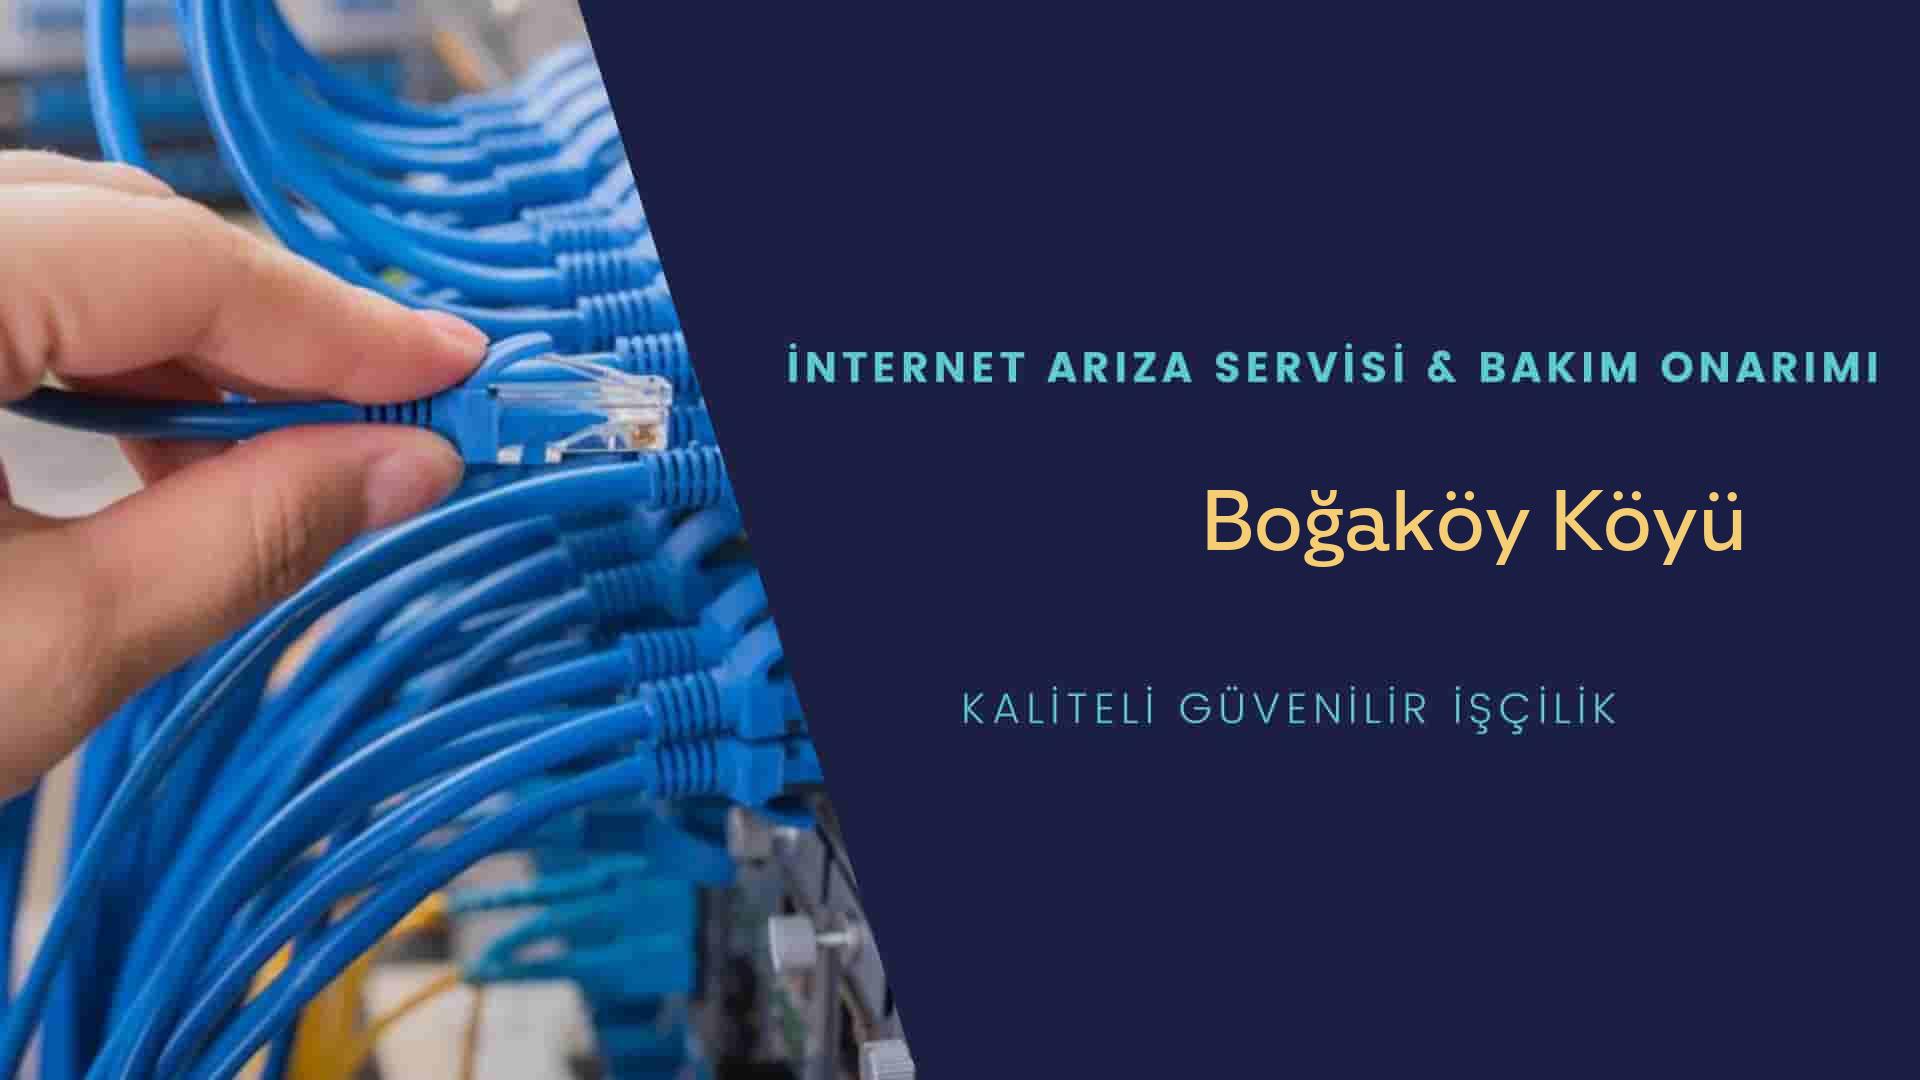 Boğaköy Köyü internet kablosu çekimi yapan yerler veya elektrikçiler mi? arıyorsunuz doğru yerdesiniz o zaman sizlere 7/24 yardımcı olacak profesyonel ustalarımız bir telefon kadar yakındır size.